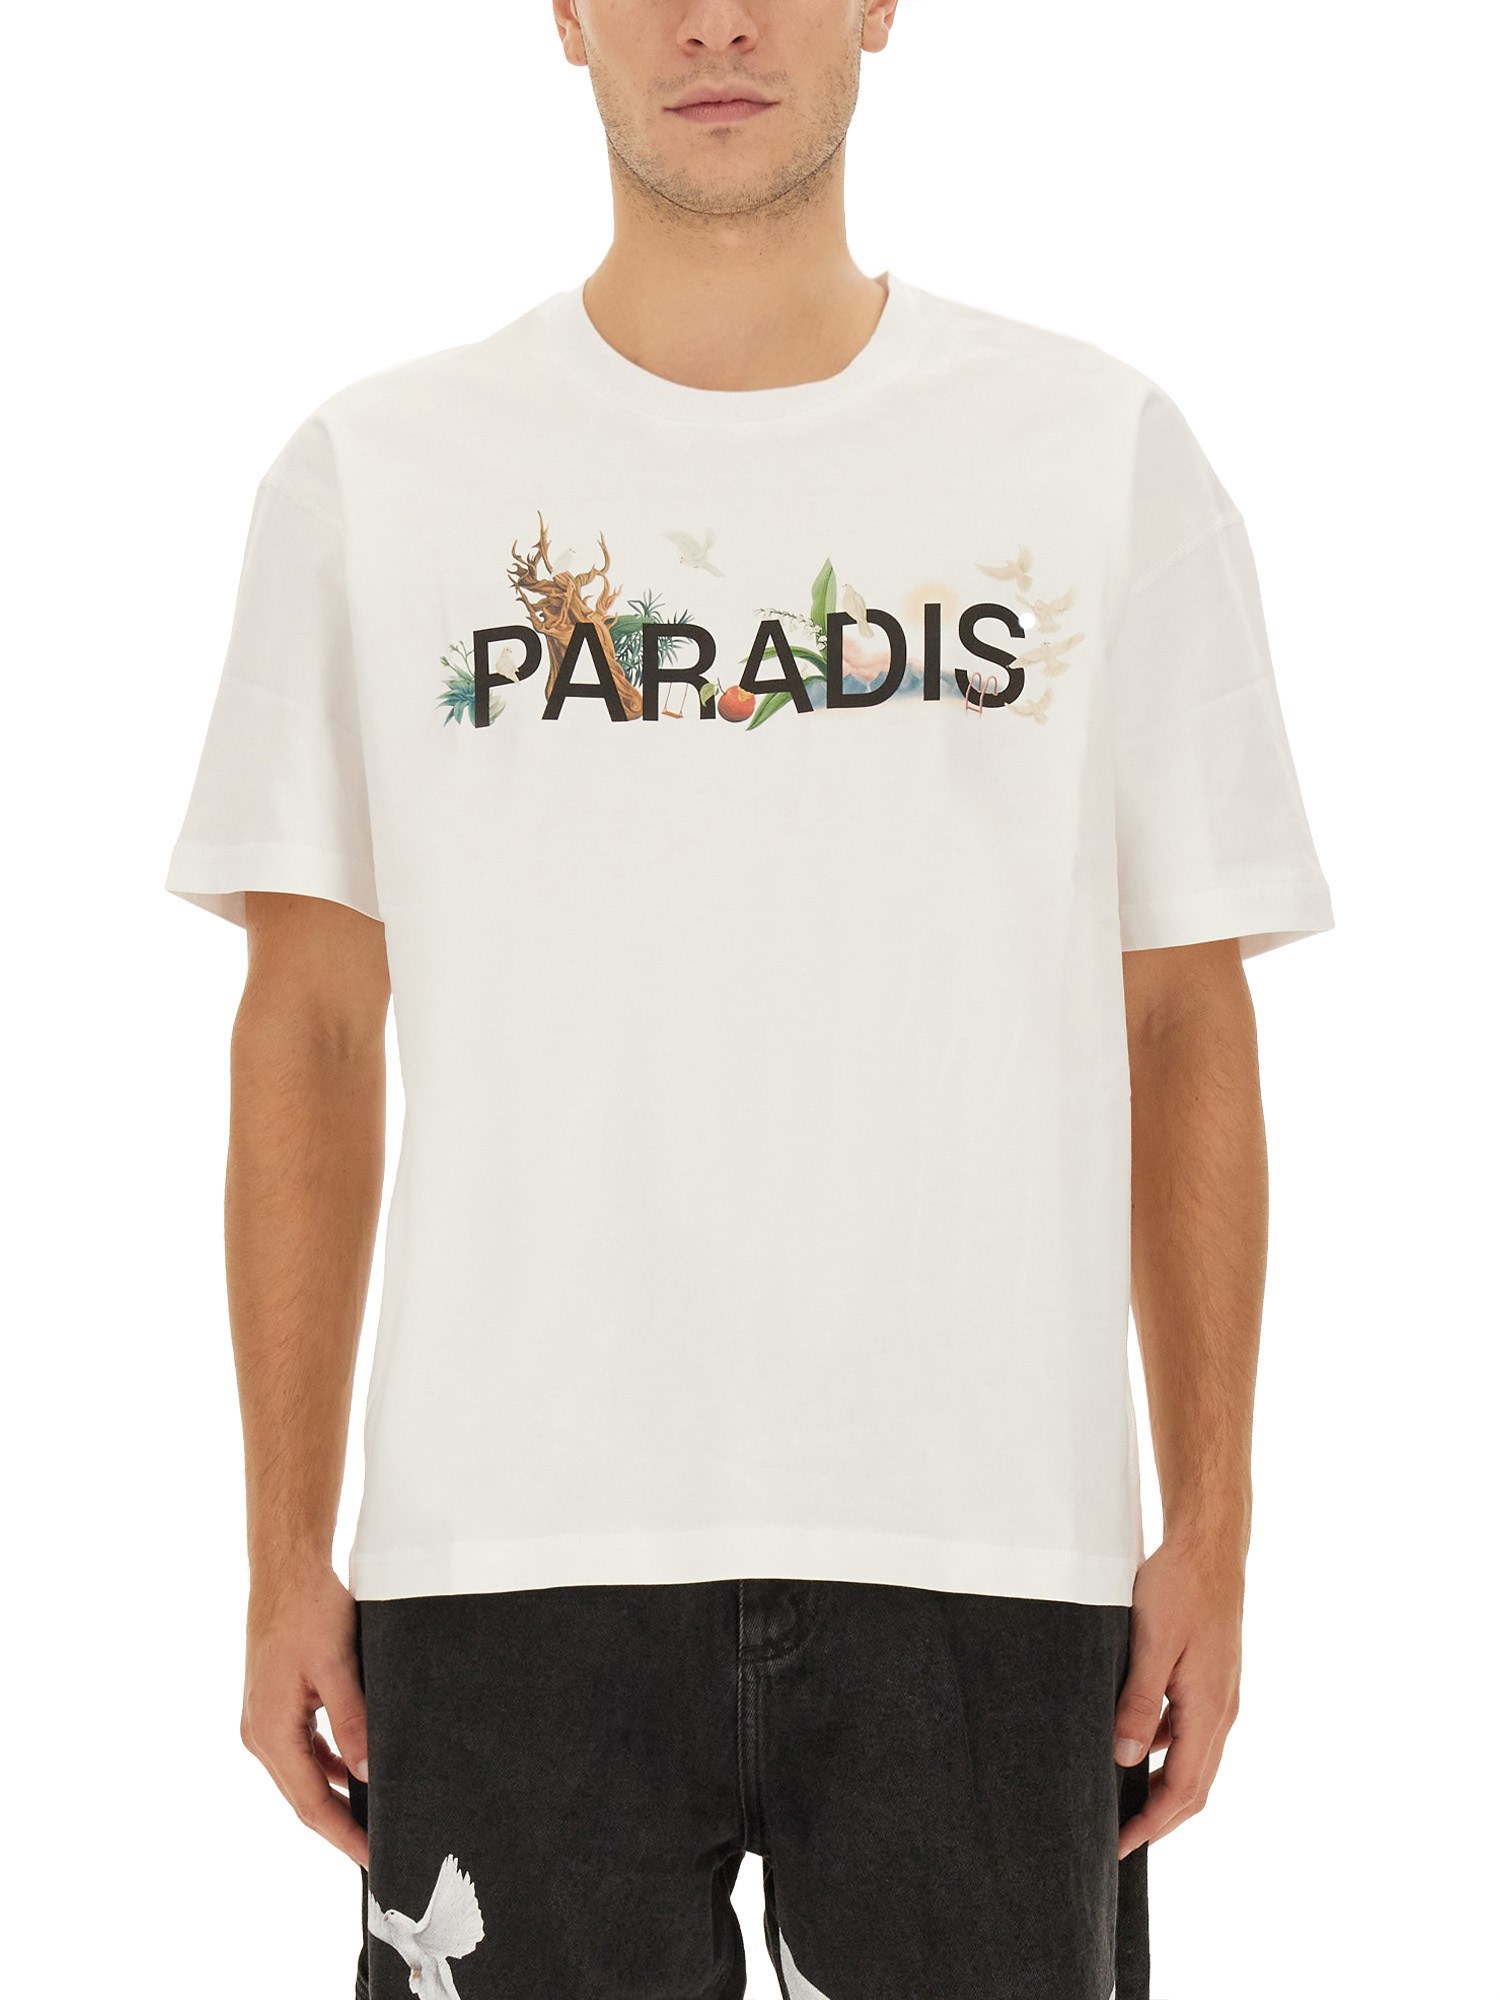 3.paradis 3.paradis t-shirt with logo